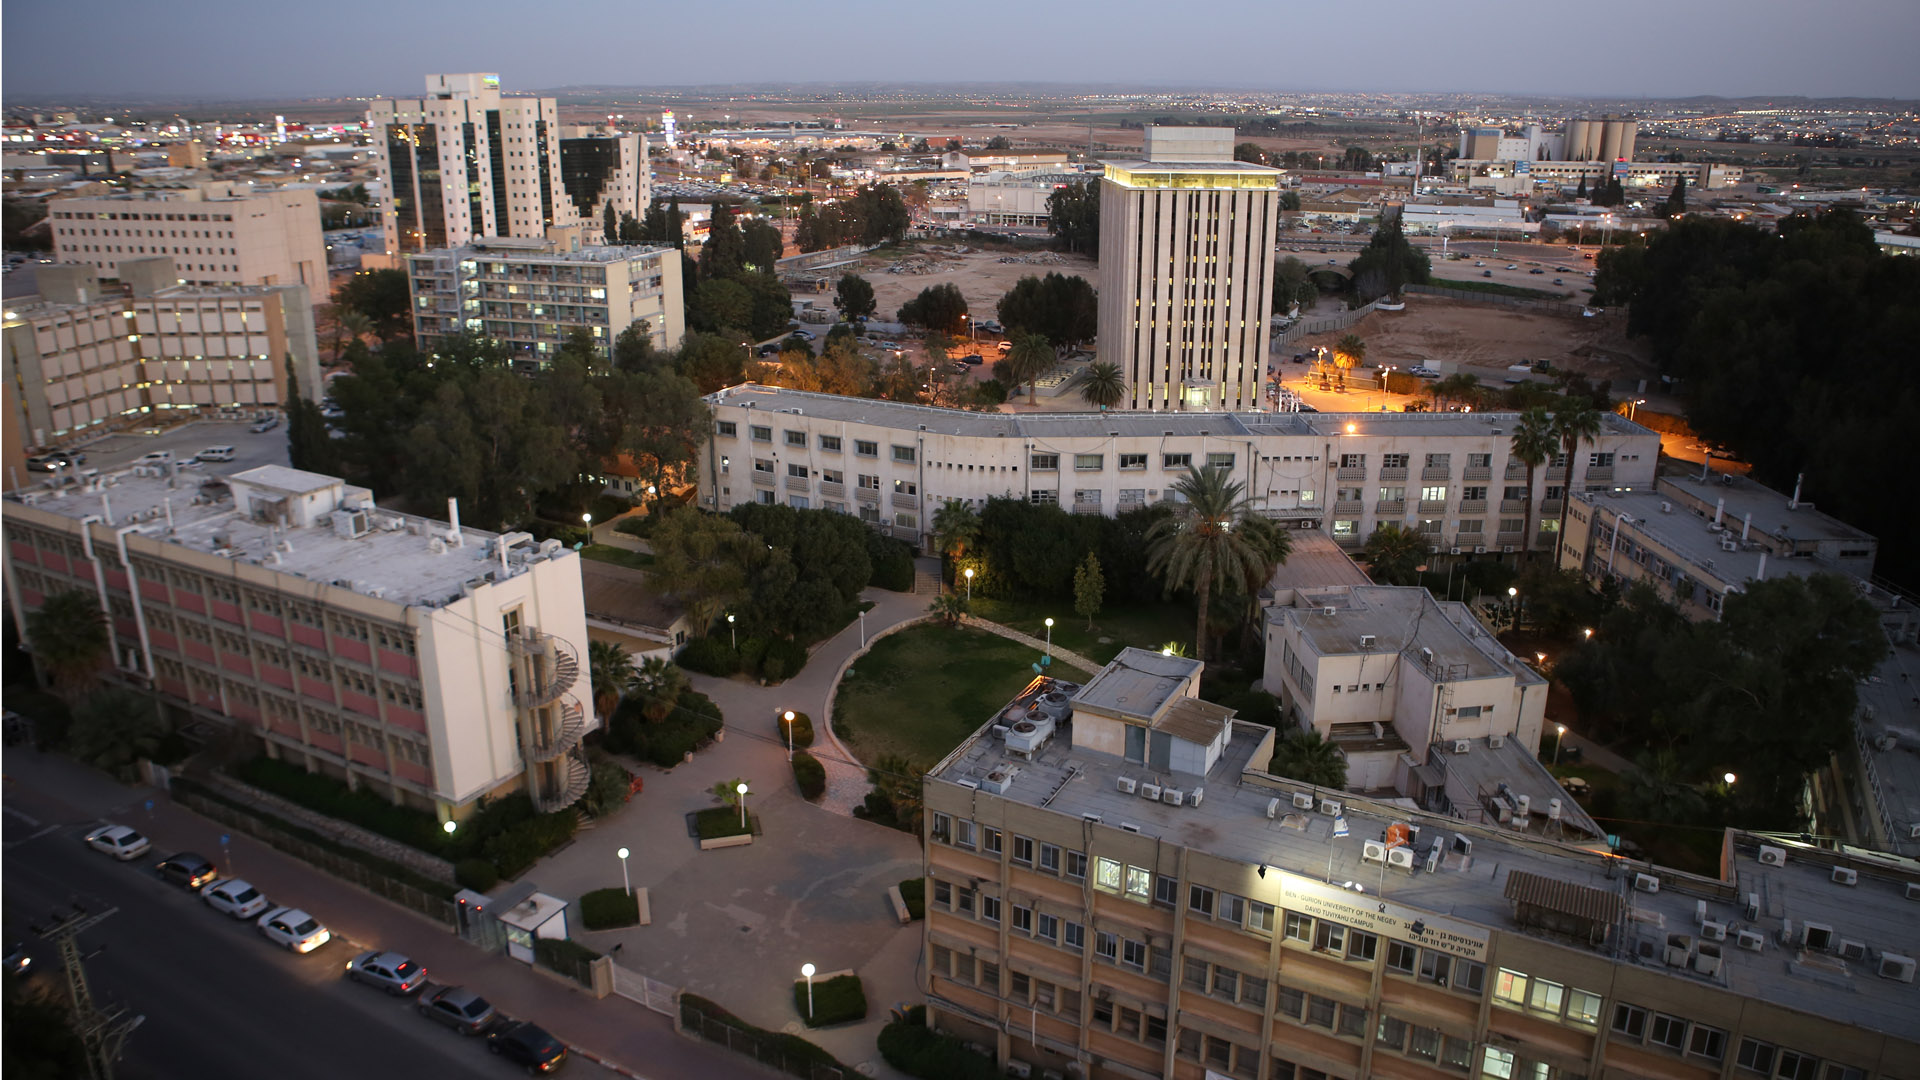 Be'er Scheva in der Negevwüste rangiert auf der Liste einen Platz vor der Mittelmeerstadt Haifa